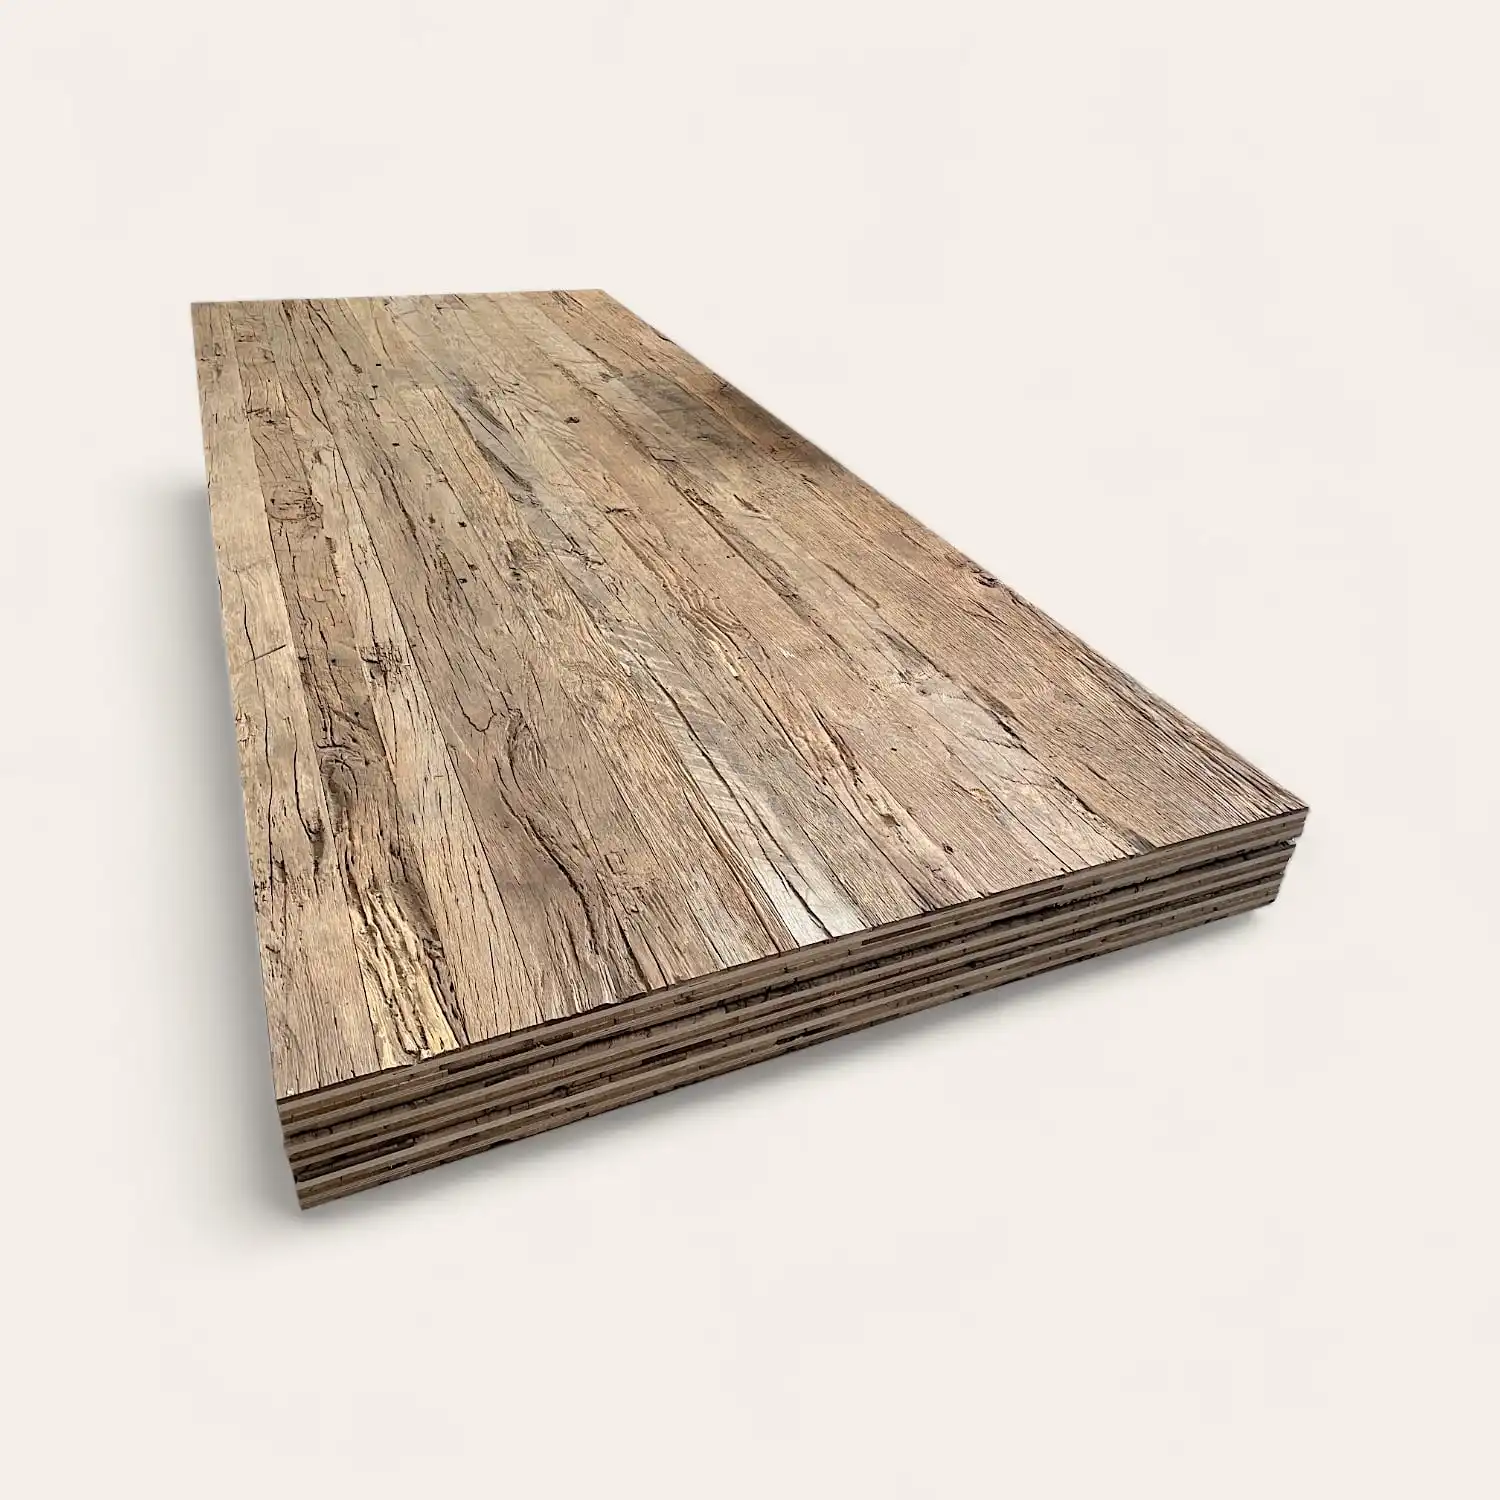  Une pile de planches de revêtement de sol stratifié 5 plis vieux bois avec une surface texturée sur fond blanc. 